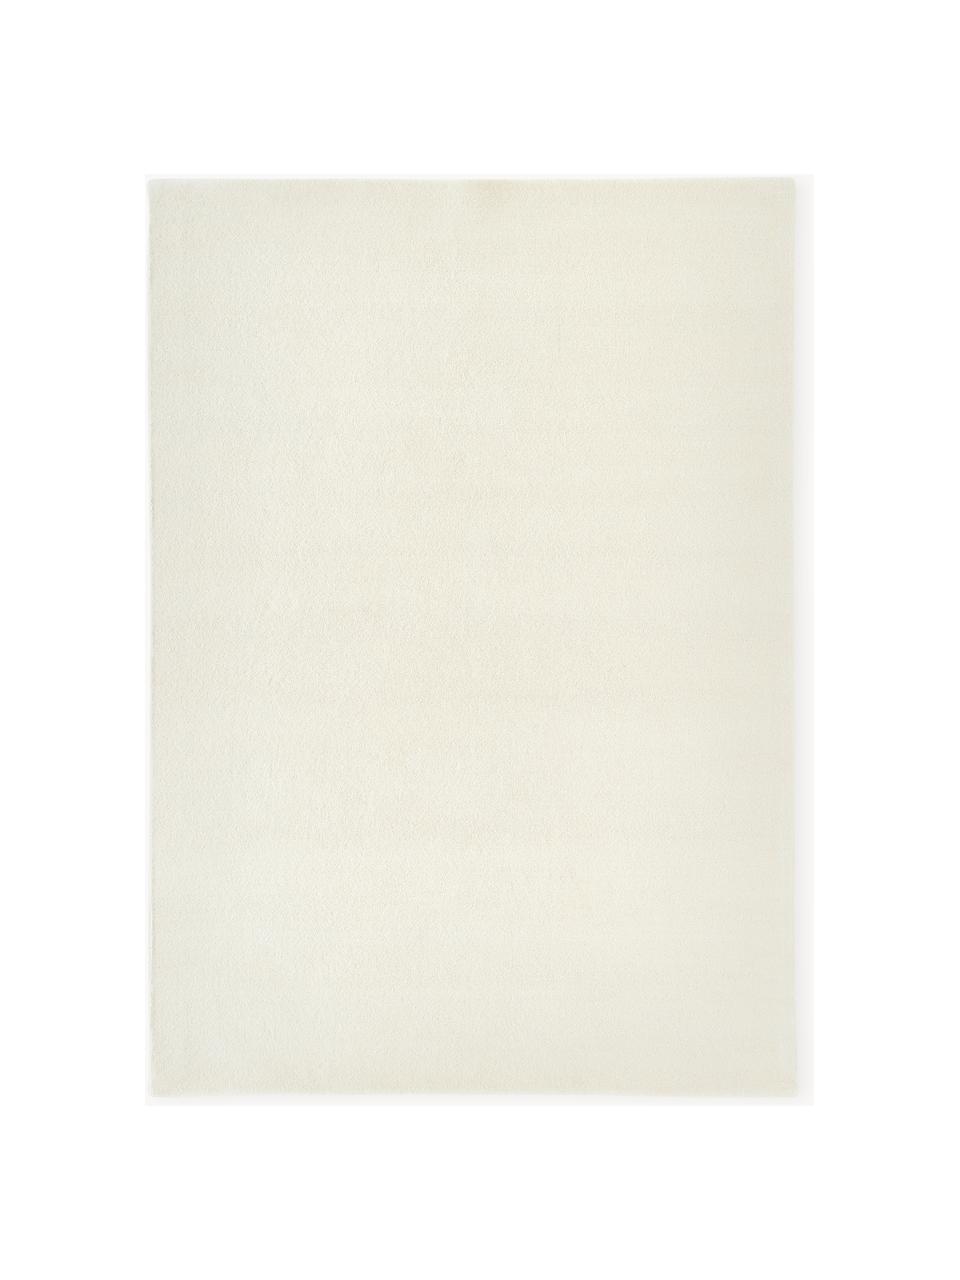 Tappeto in lana a pelo corto fatto a mano Ezra, Retro: 70% cotone, 30% poliester, Bianco crema, Larg. 160 x Lung. 230 cm (taglia M)